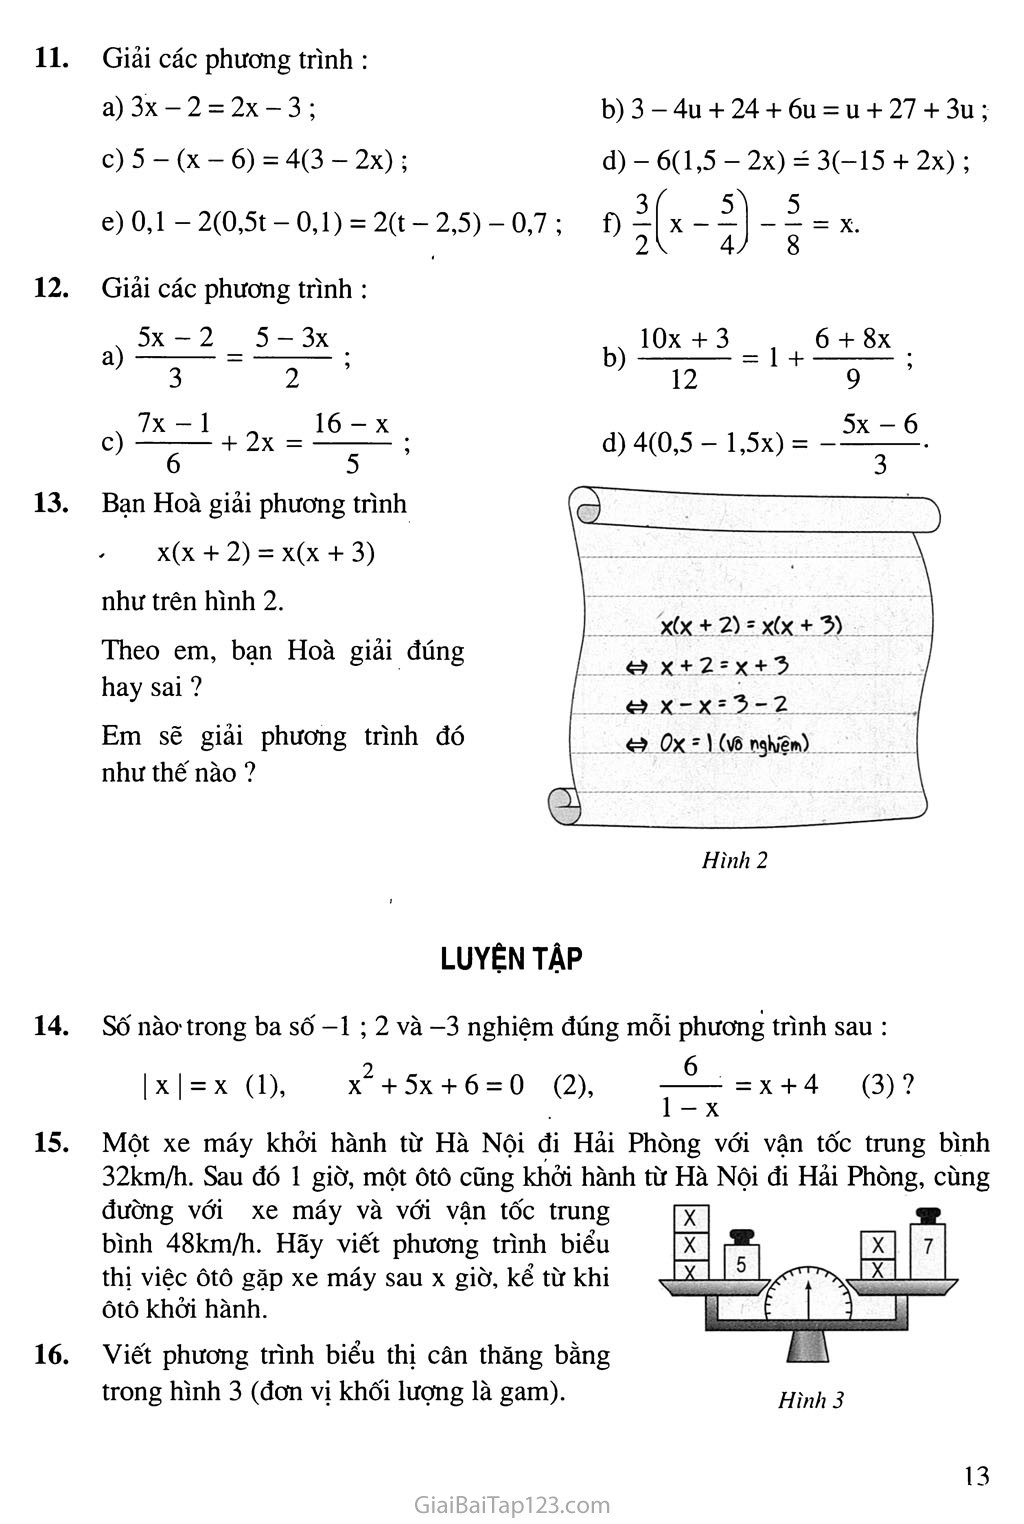 Bài 3. Phương trình đưa được về dạng ax + b = 0 trang 4